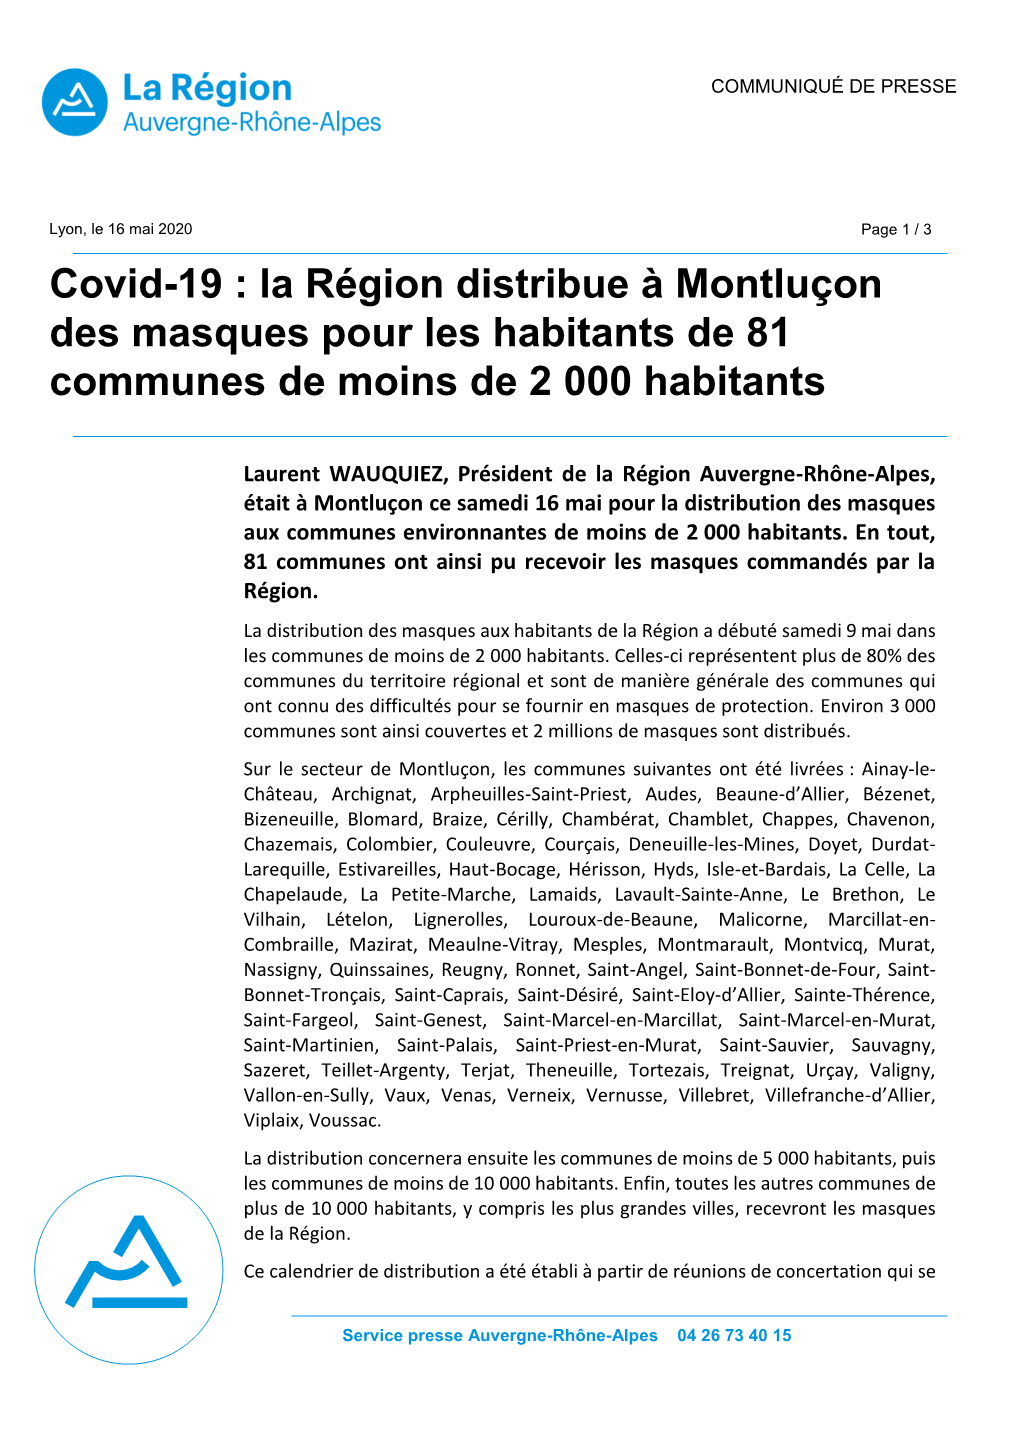 Covid-19 : La Région Distribue À Montluçon Des Masques Pour Les Habitants De 81 Communes De Moins De 2 000 Habitants